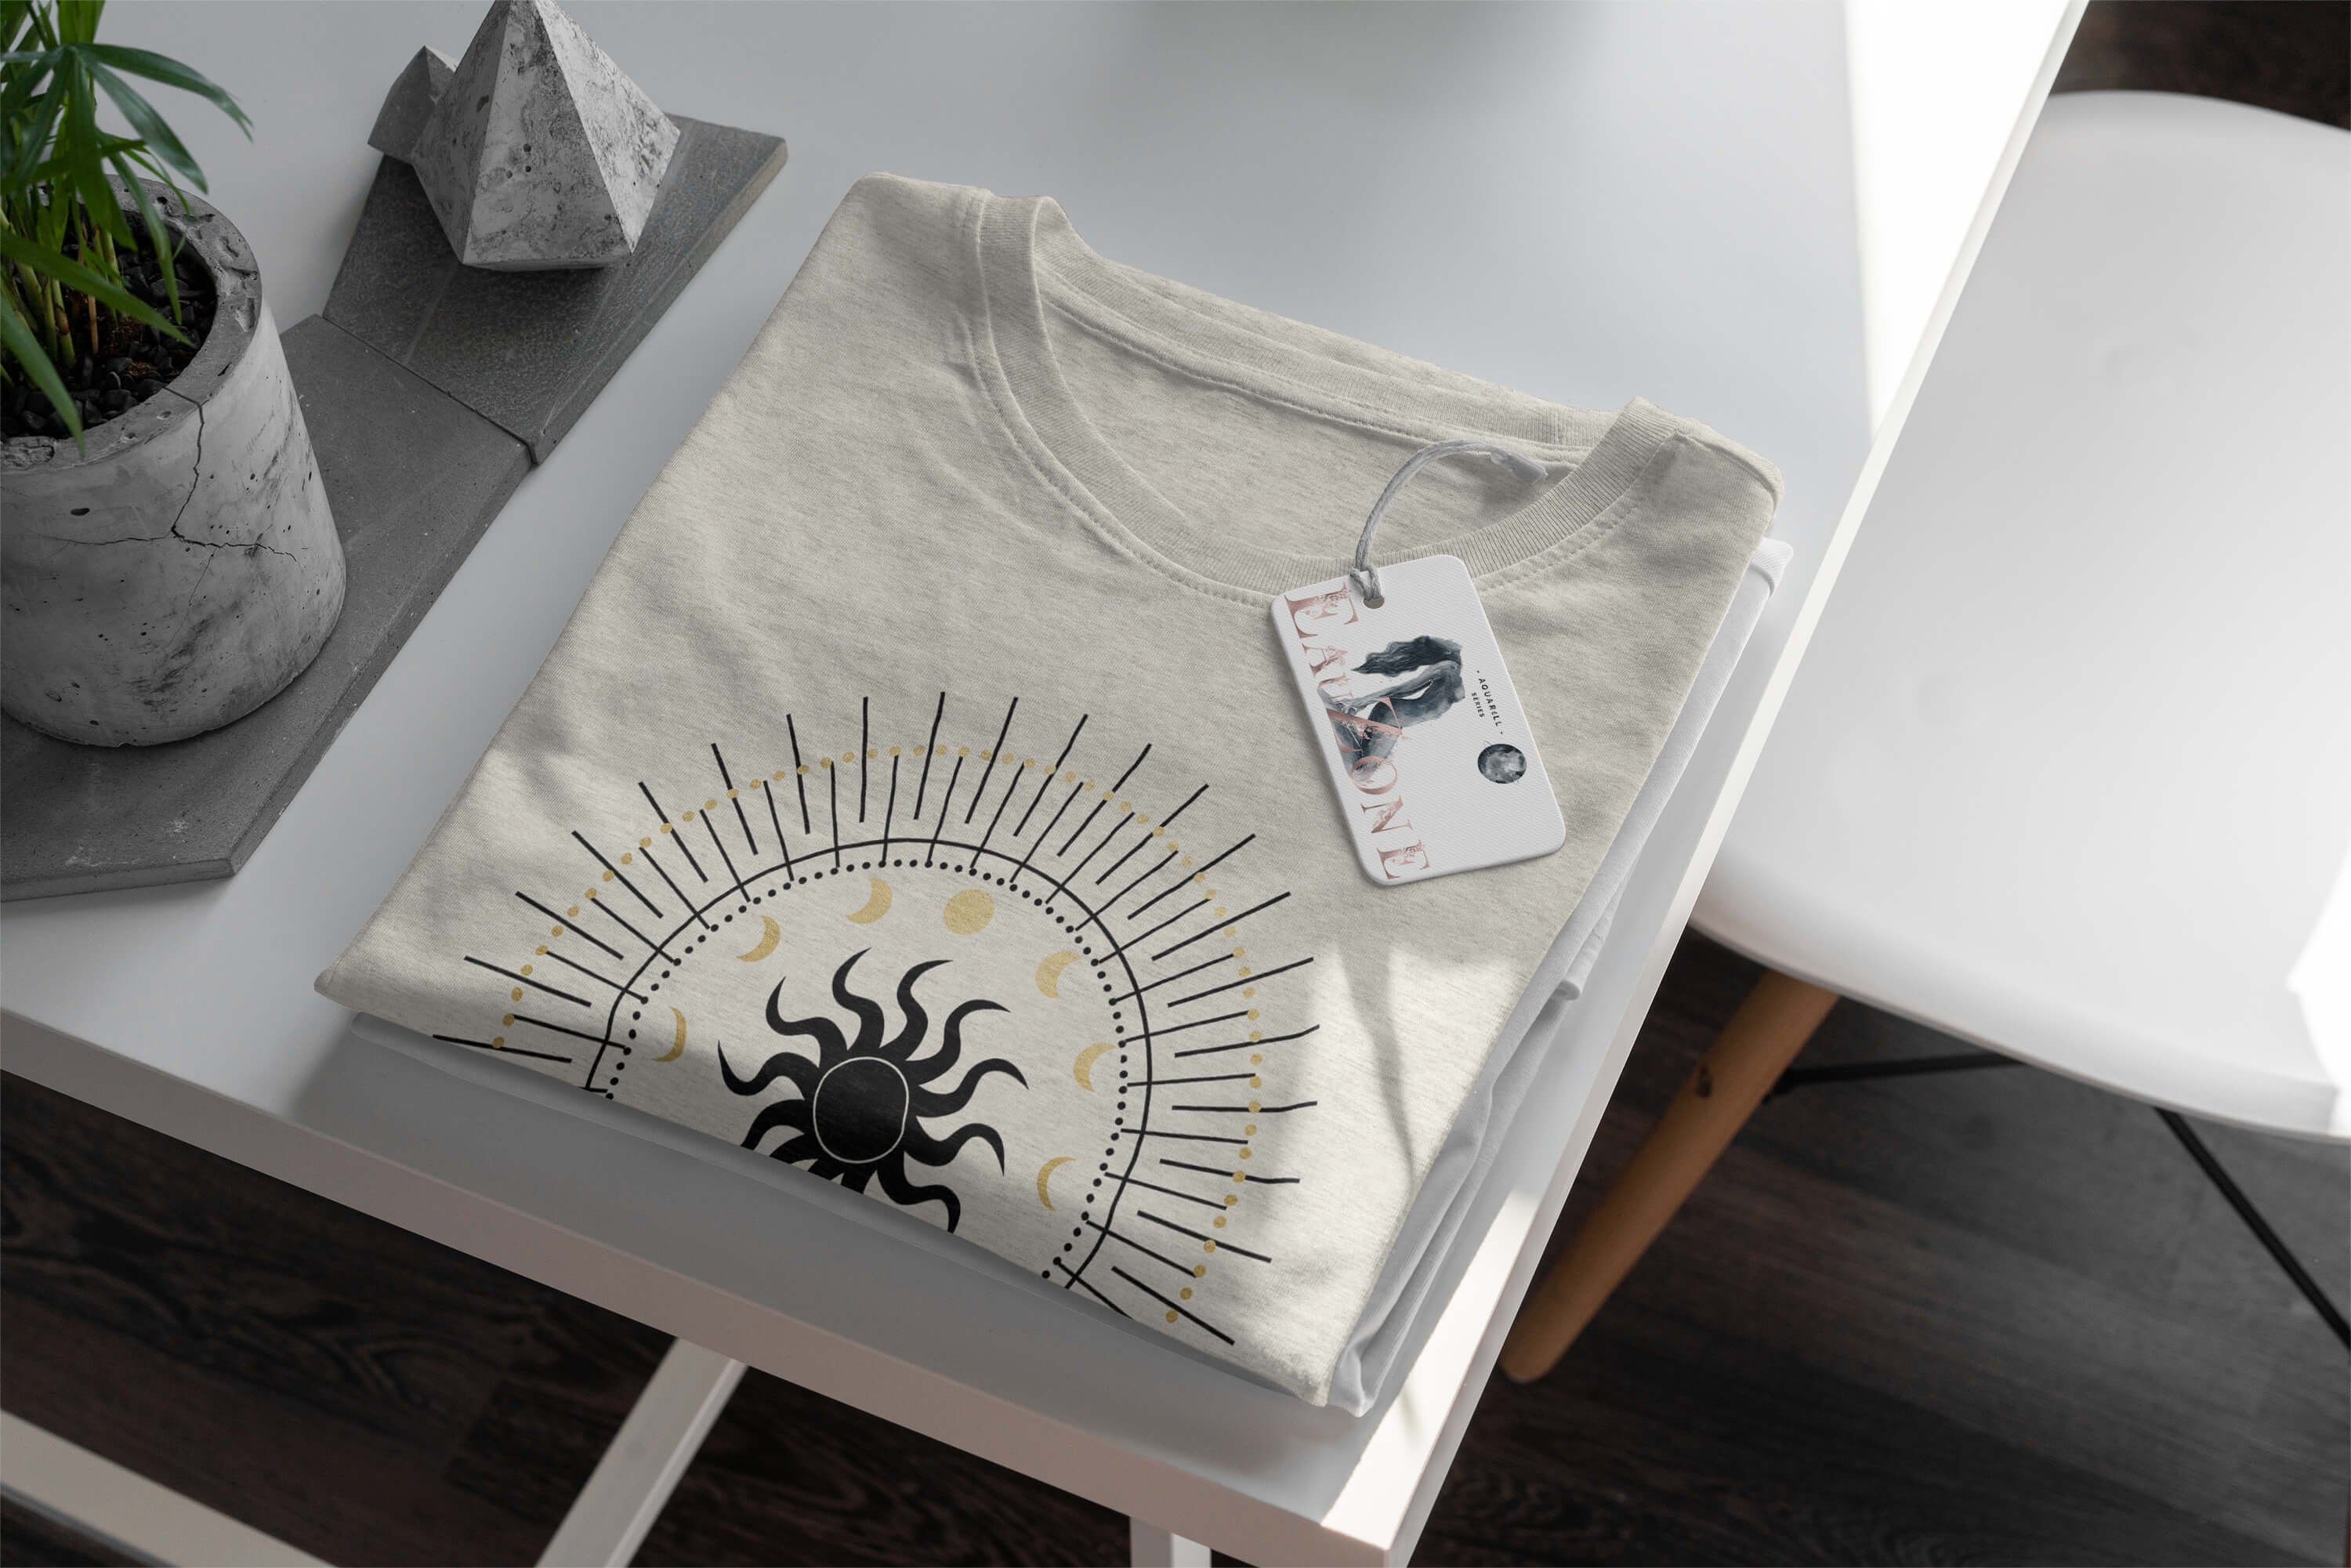 Art (1-tlg) Ökomode Herren Nachhaltig Sinus Sonne T-Shirt Bio-Baumwolle Mond Motiv Shirt 100% Astrologie aus T-Shirt gekämmte